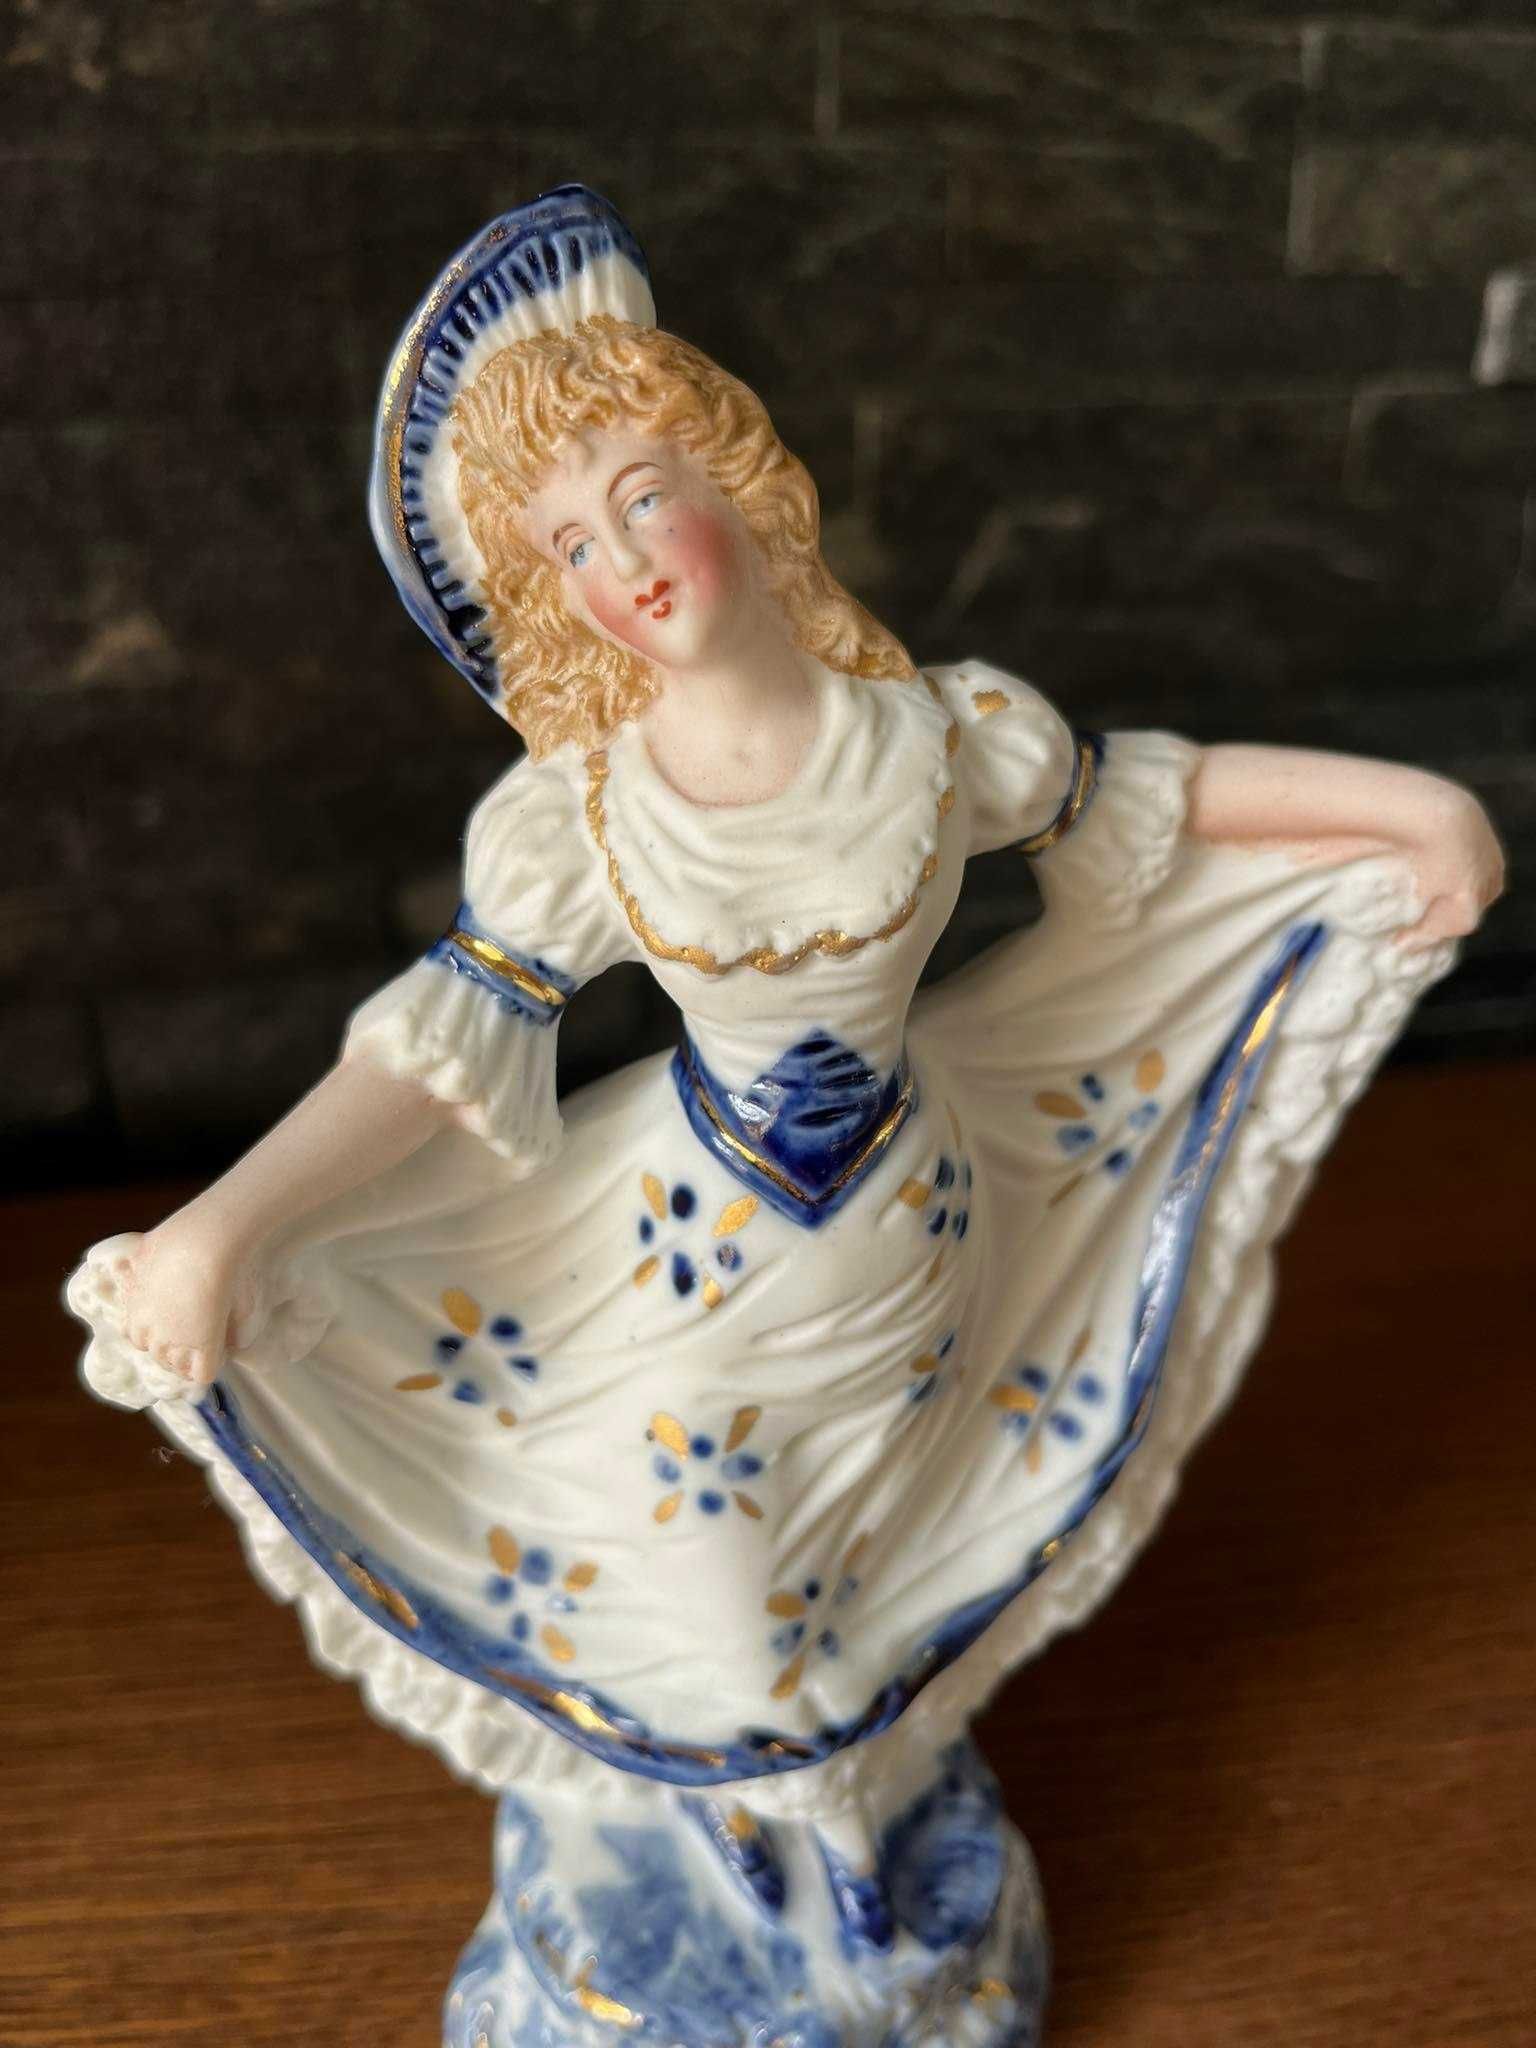 Dama figurka porcelana biskwitowa sygnowana